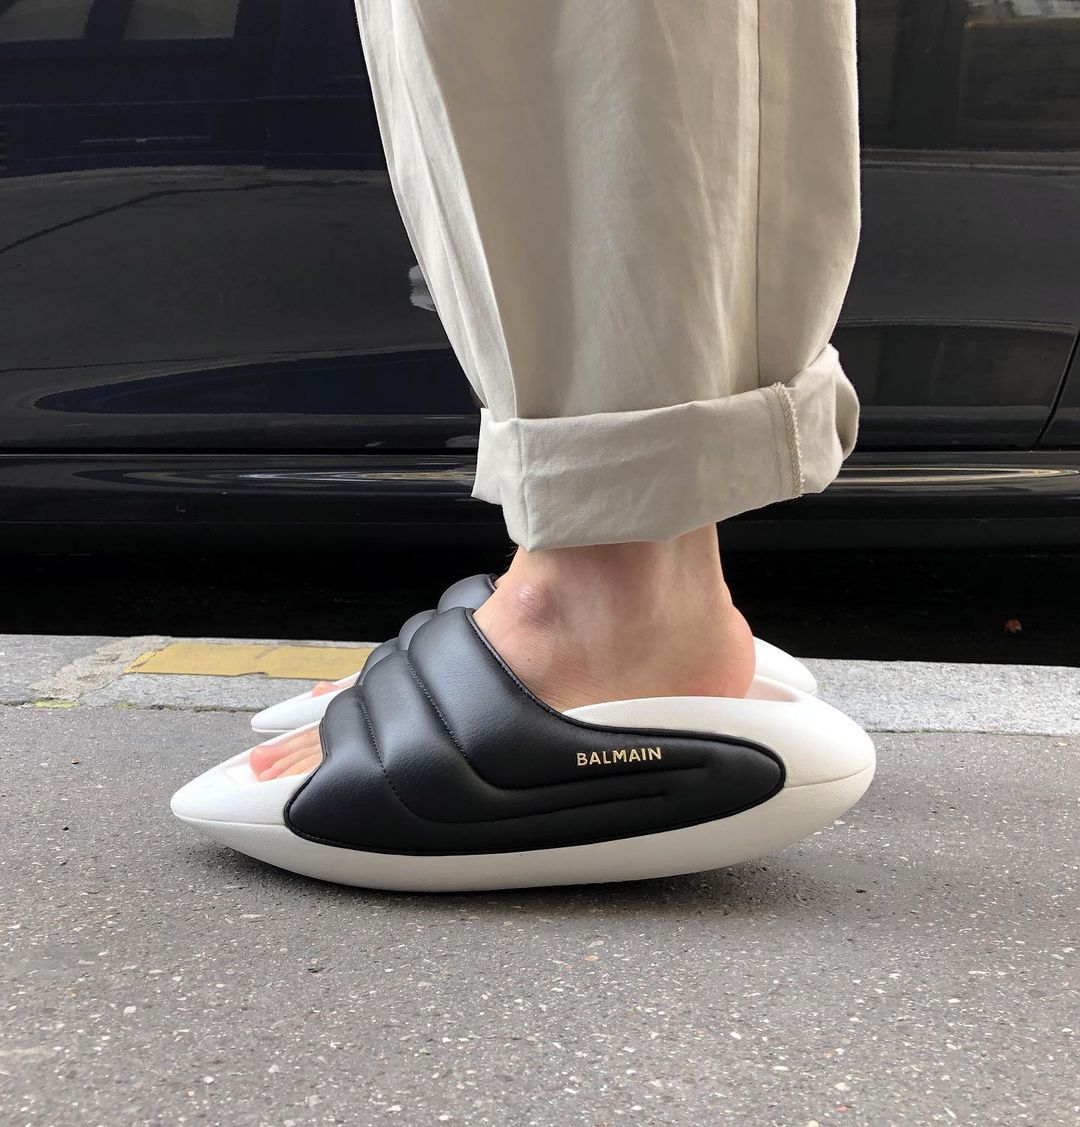 Sneaker News Twitter: "Are Balmain slides 🔥 or 🗑️? (via safasahinn/IG) https://t.co/QmkH9McH67" Twitter